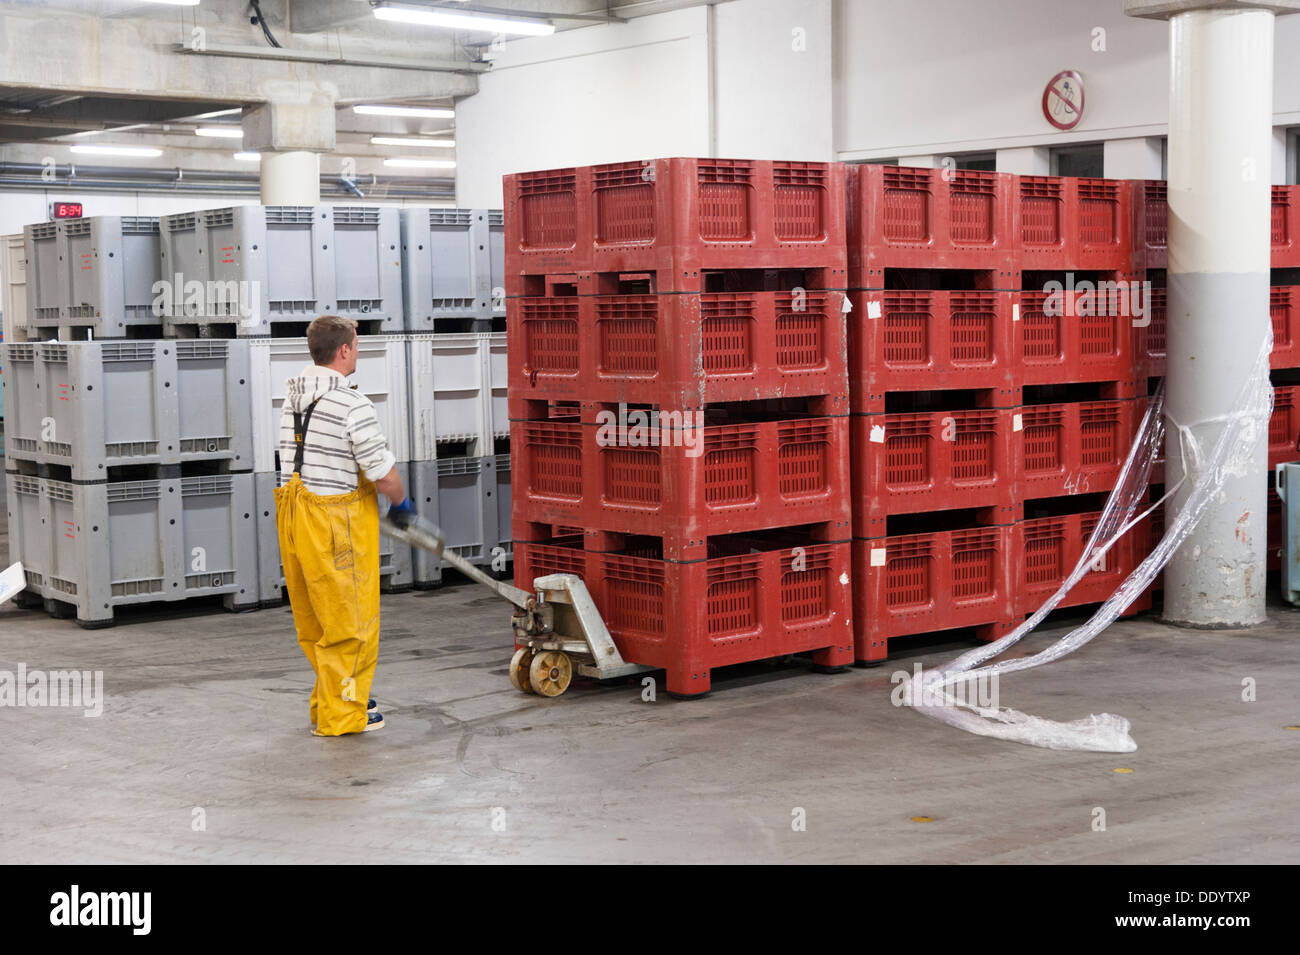 Un travailleur du marché aux poissons ou crieur public de Concarneau Bretagne France déménagement boîtes en plastique dans l'entrepôt Banque D'Images